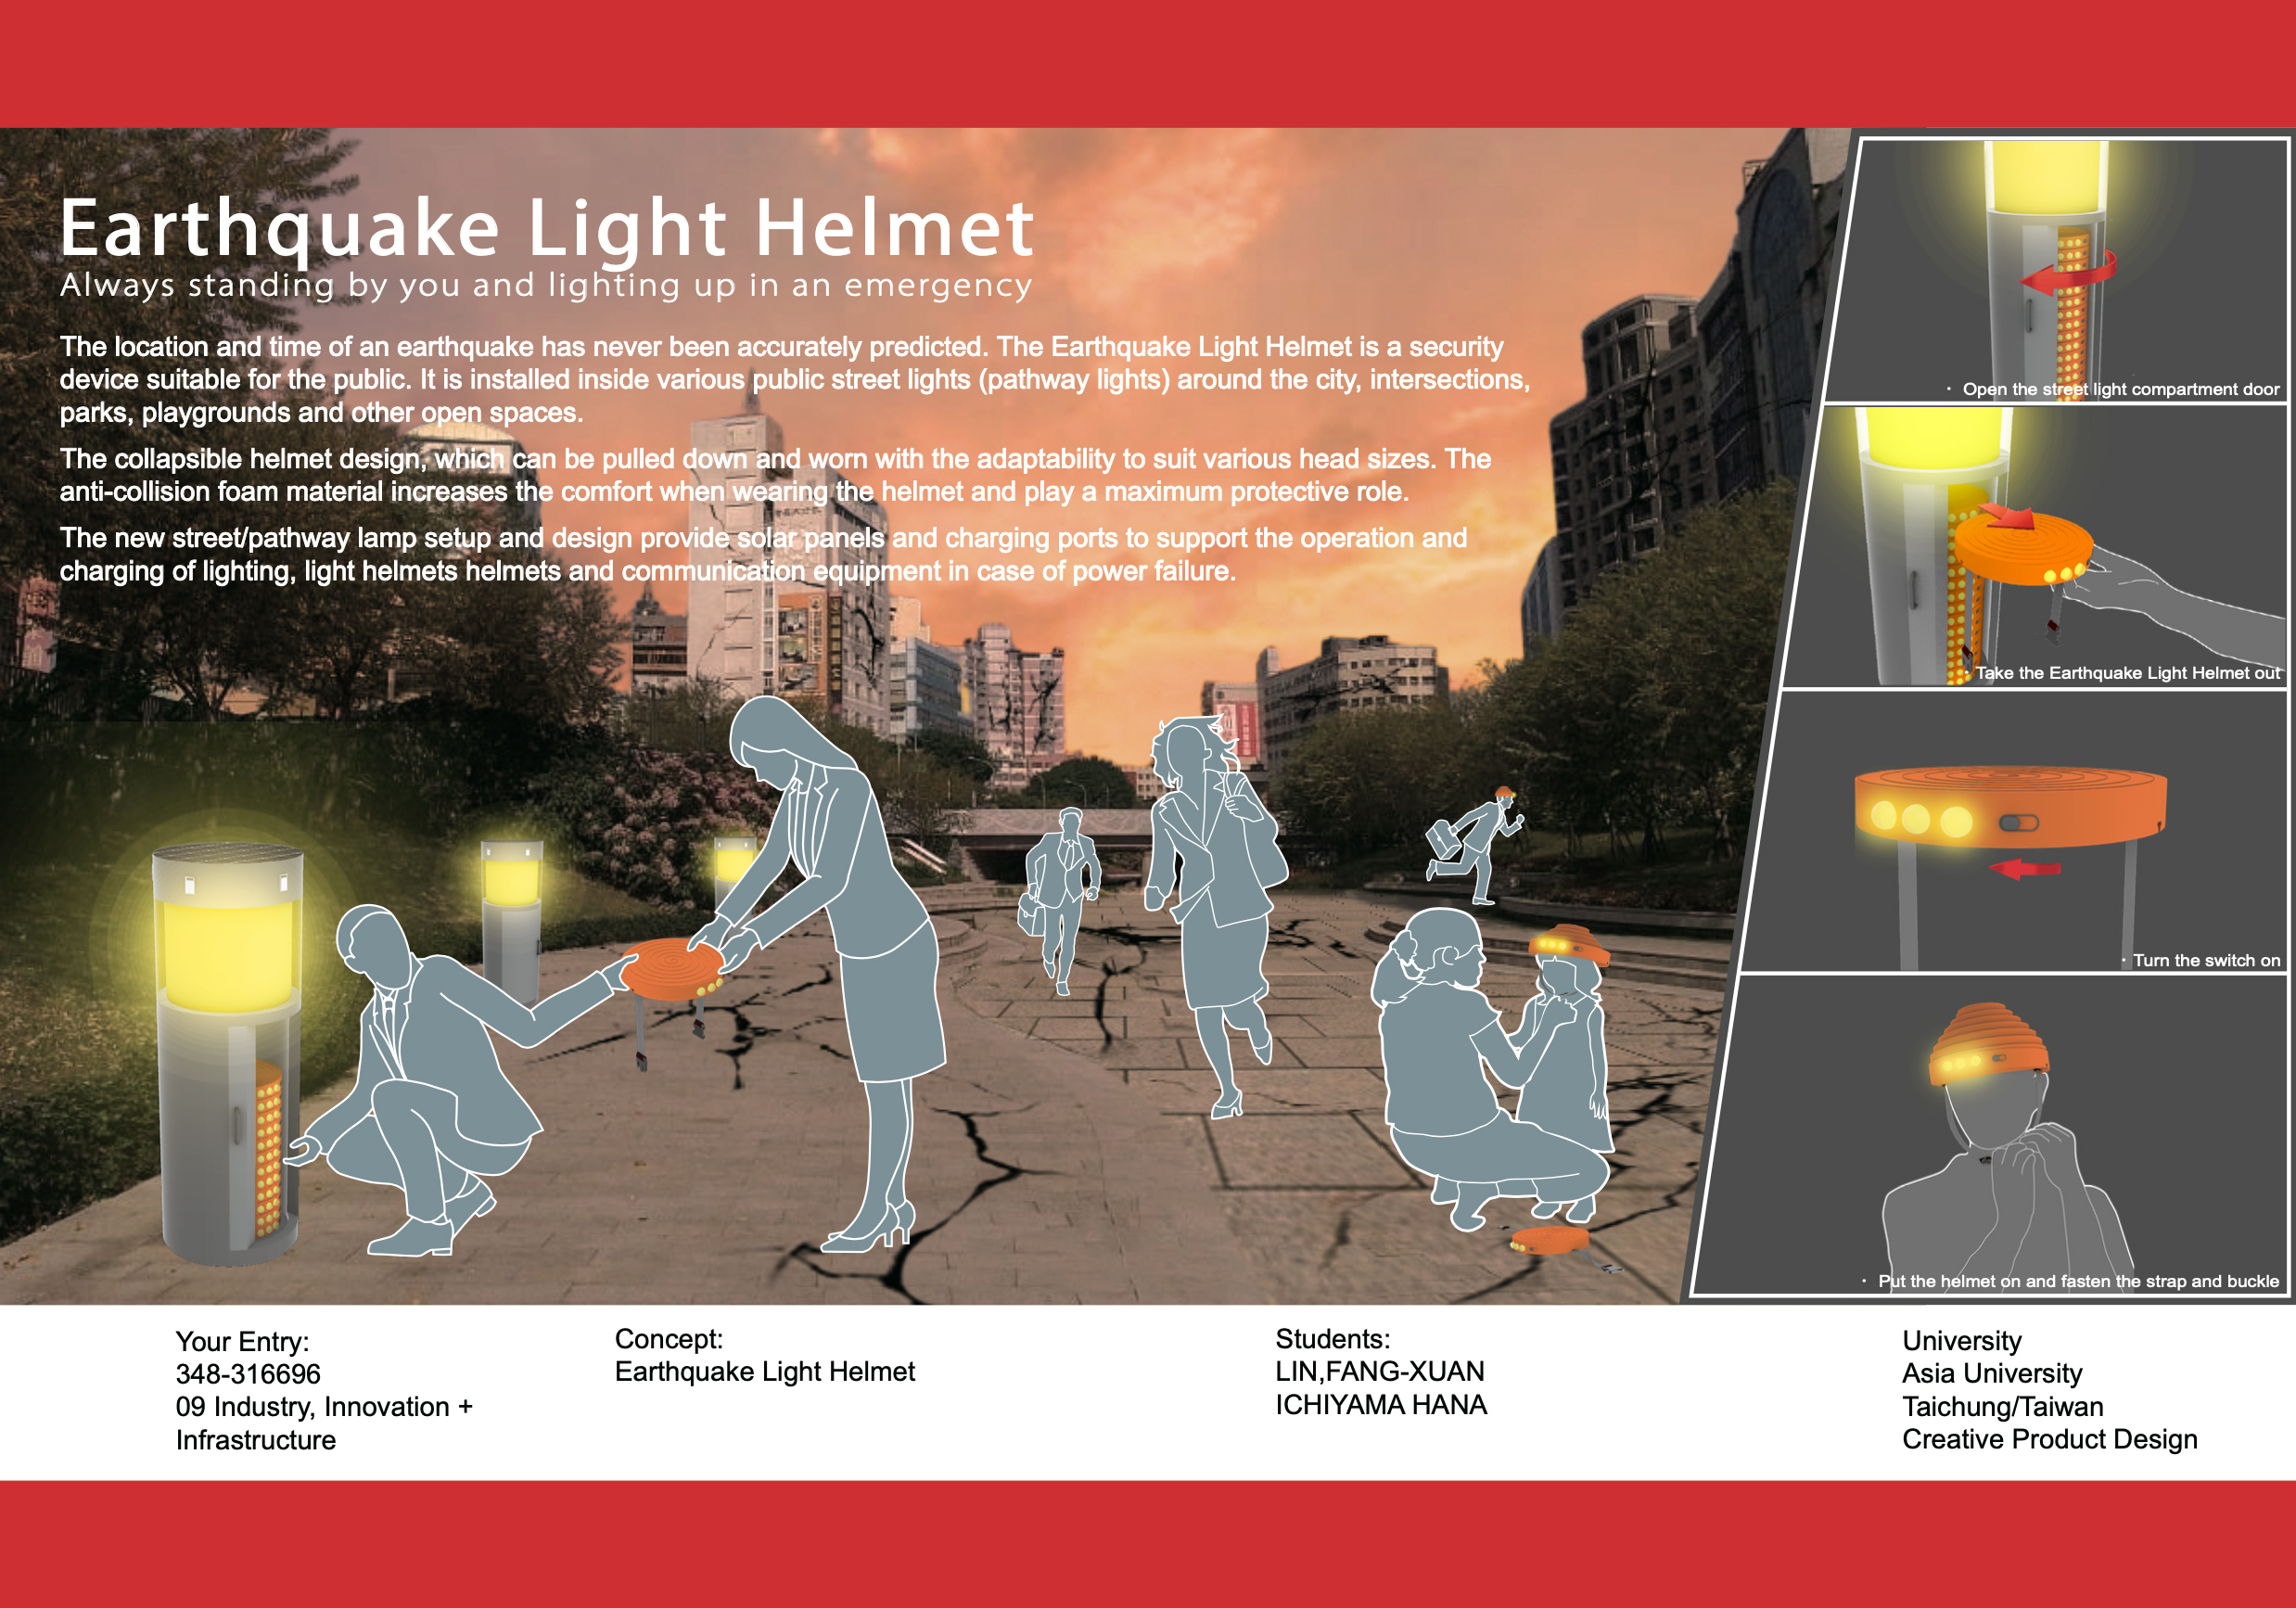 亞大商品系學生設計的「地震防護支援系統」，在公園路燈內提供能發光的安全帽，地震後發生後提供民眾使用